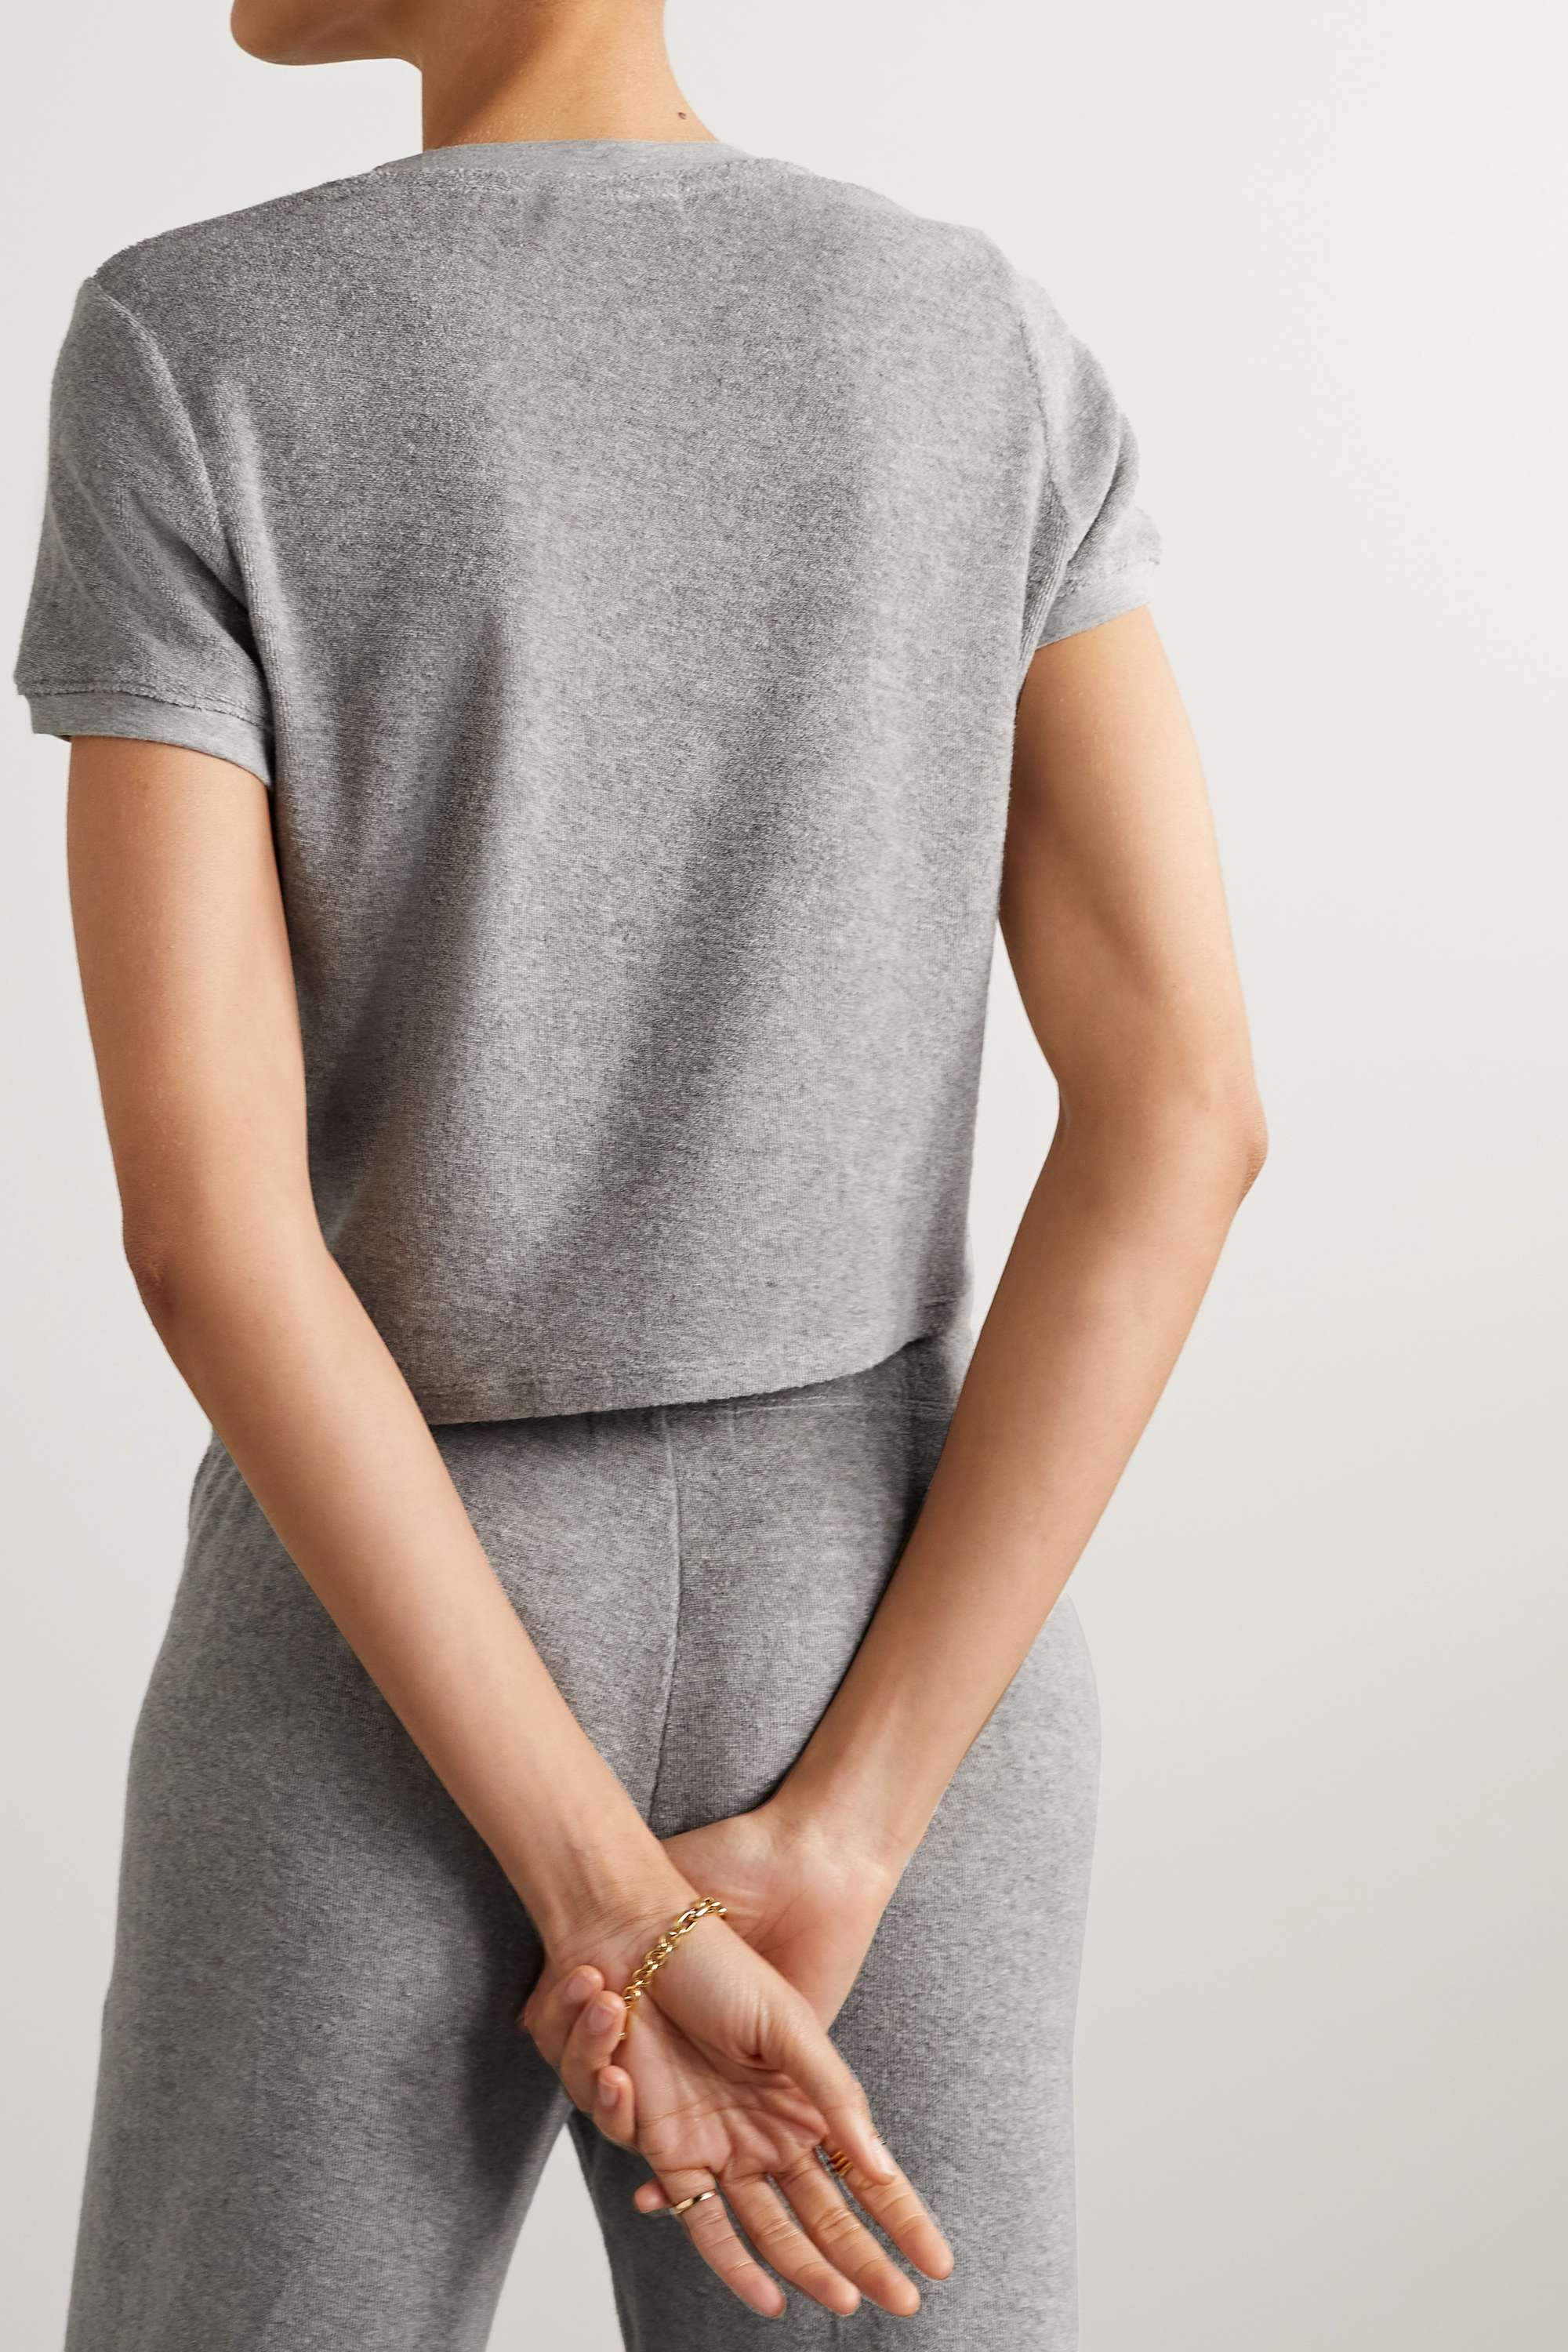 SUZIE KONDI Капри футболка из хлопковой махровой ткани, серый газовый топ rhea с эффектом металлик suzie kondi цвет aspro